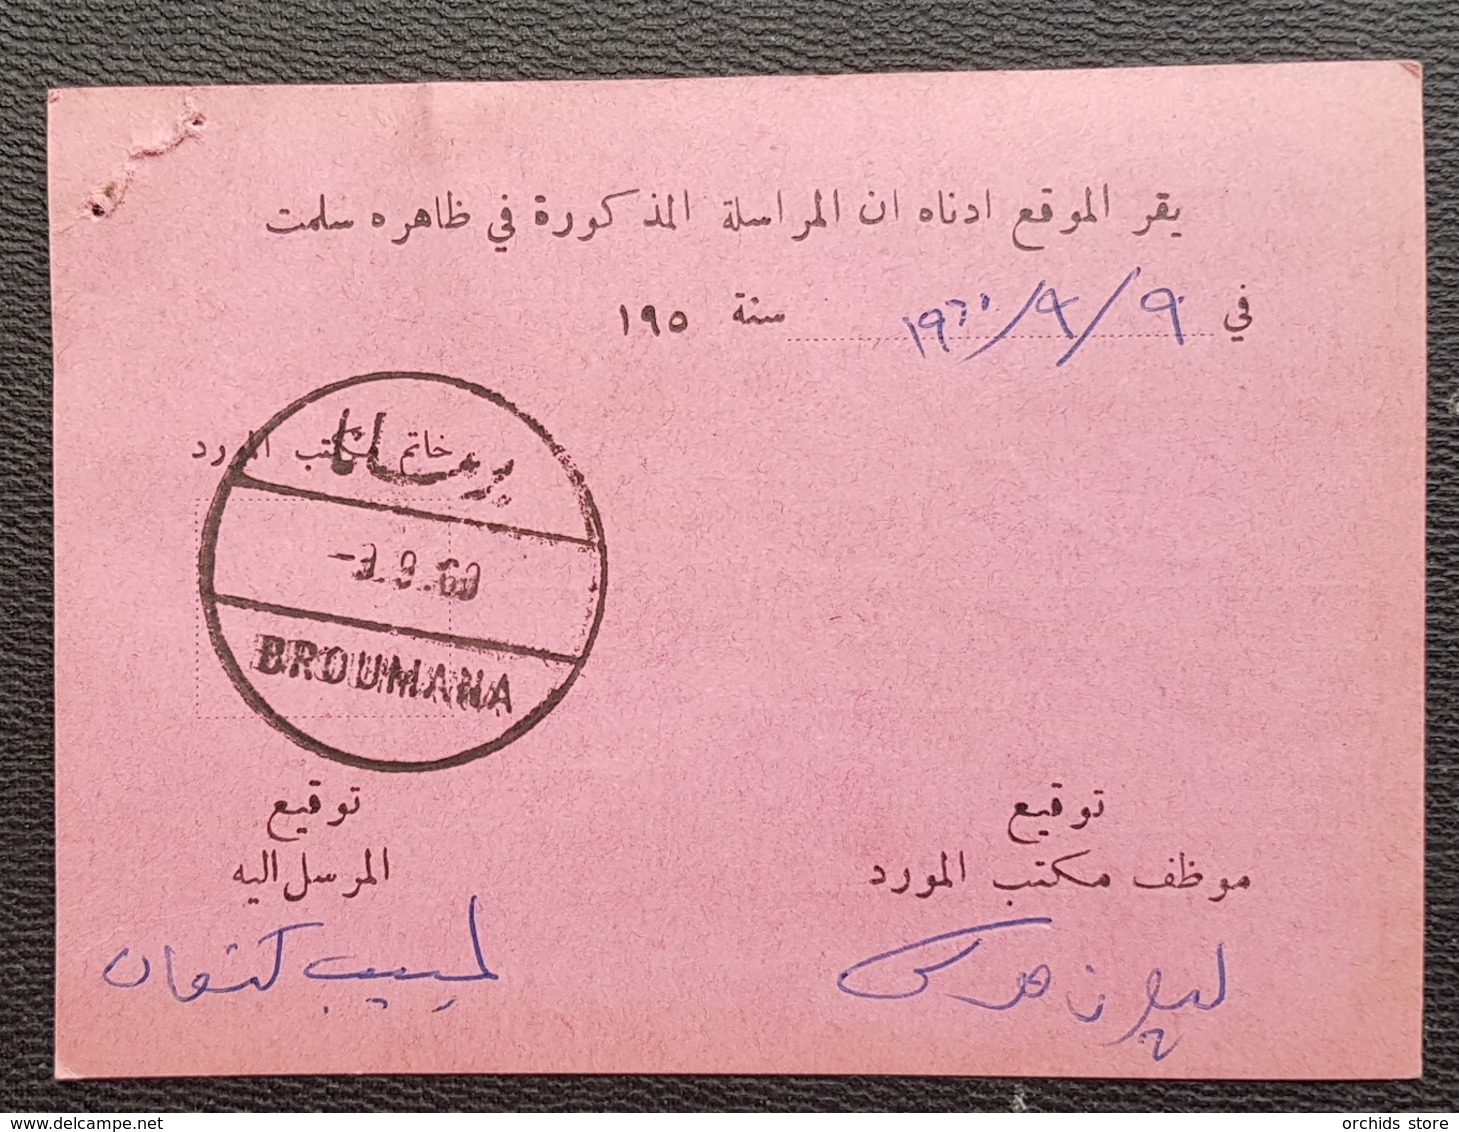 GE - Lebanon 1960 BROUMANA Circular Cancel, Nice Strike, On A Postal Card - Lebanon